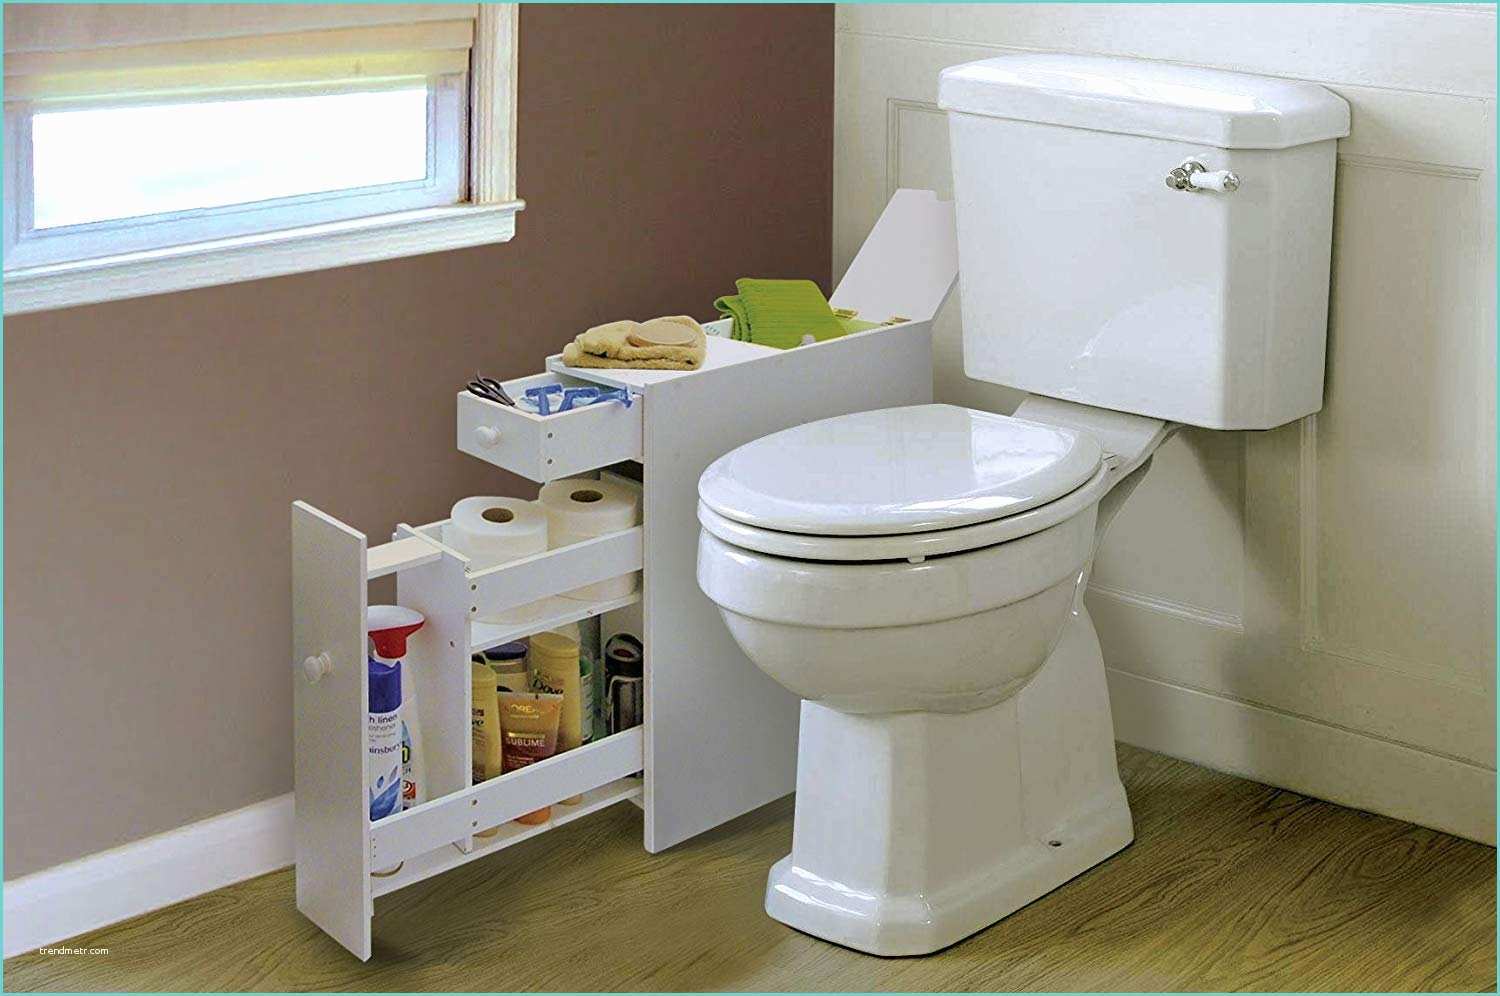 Value units toilet. Slim Bathroom Cabinet Storage. Cabinet Toilet Roll Storage. 100mm Bathroom Cupboard. Фото самый дорогой Юнит в туалет дефенс.